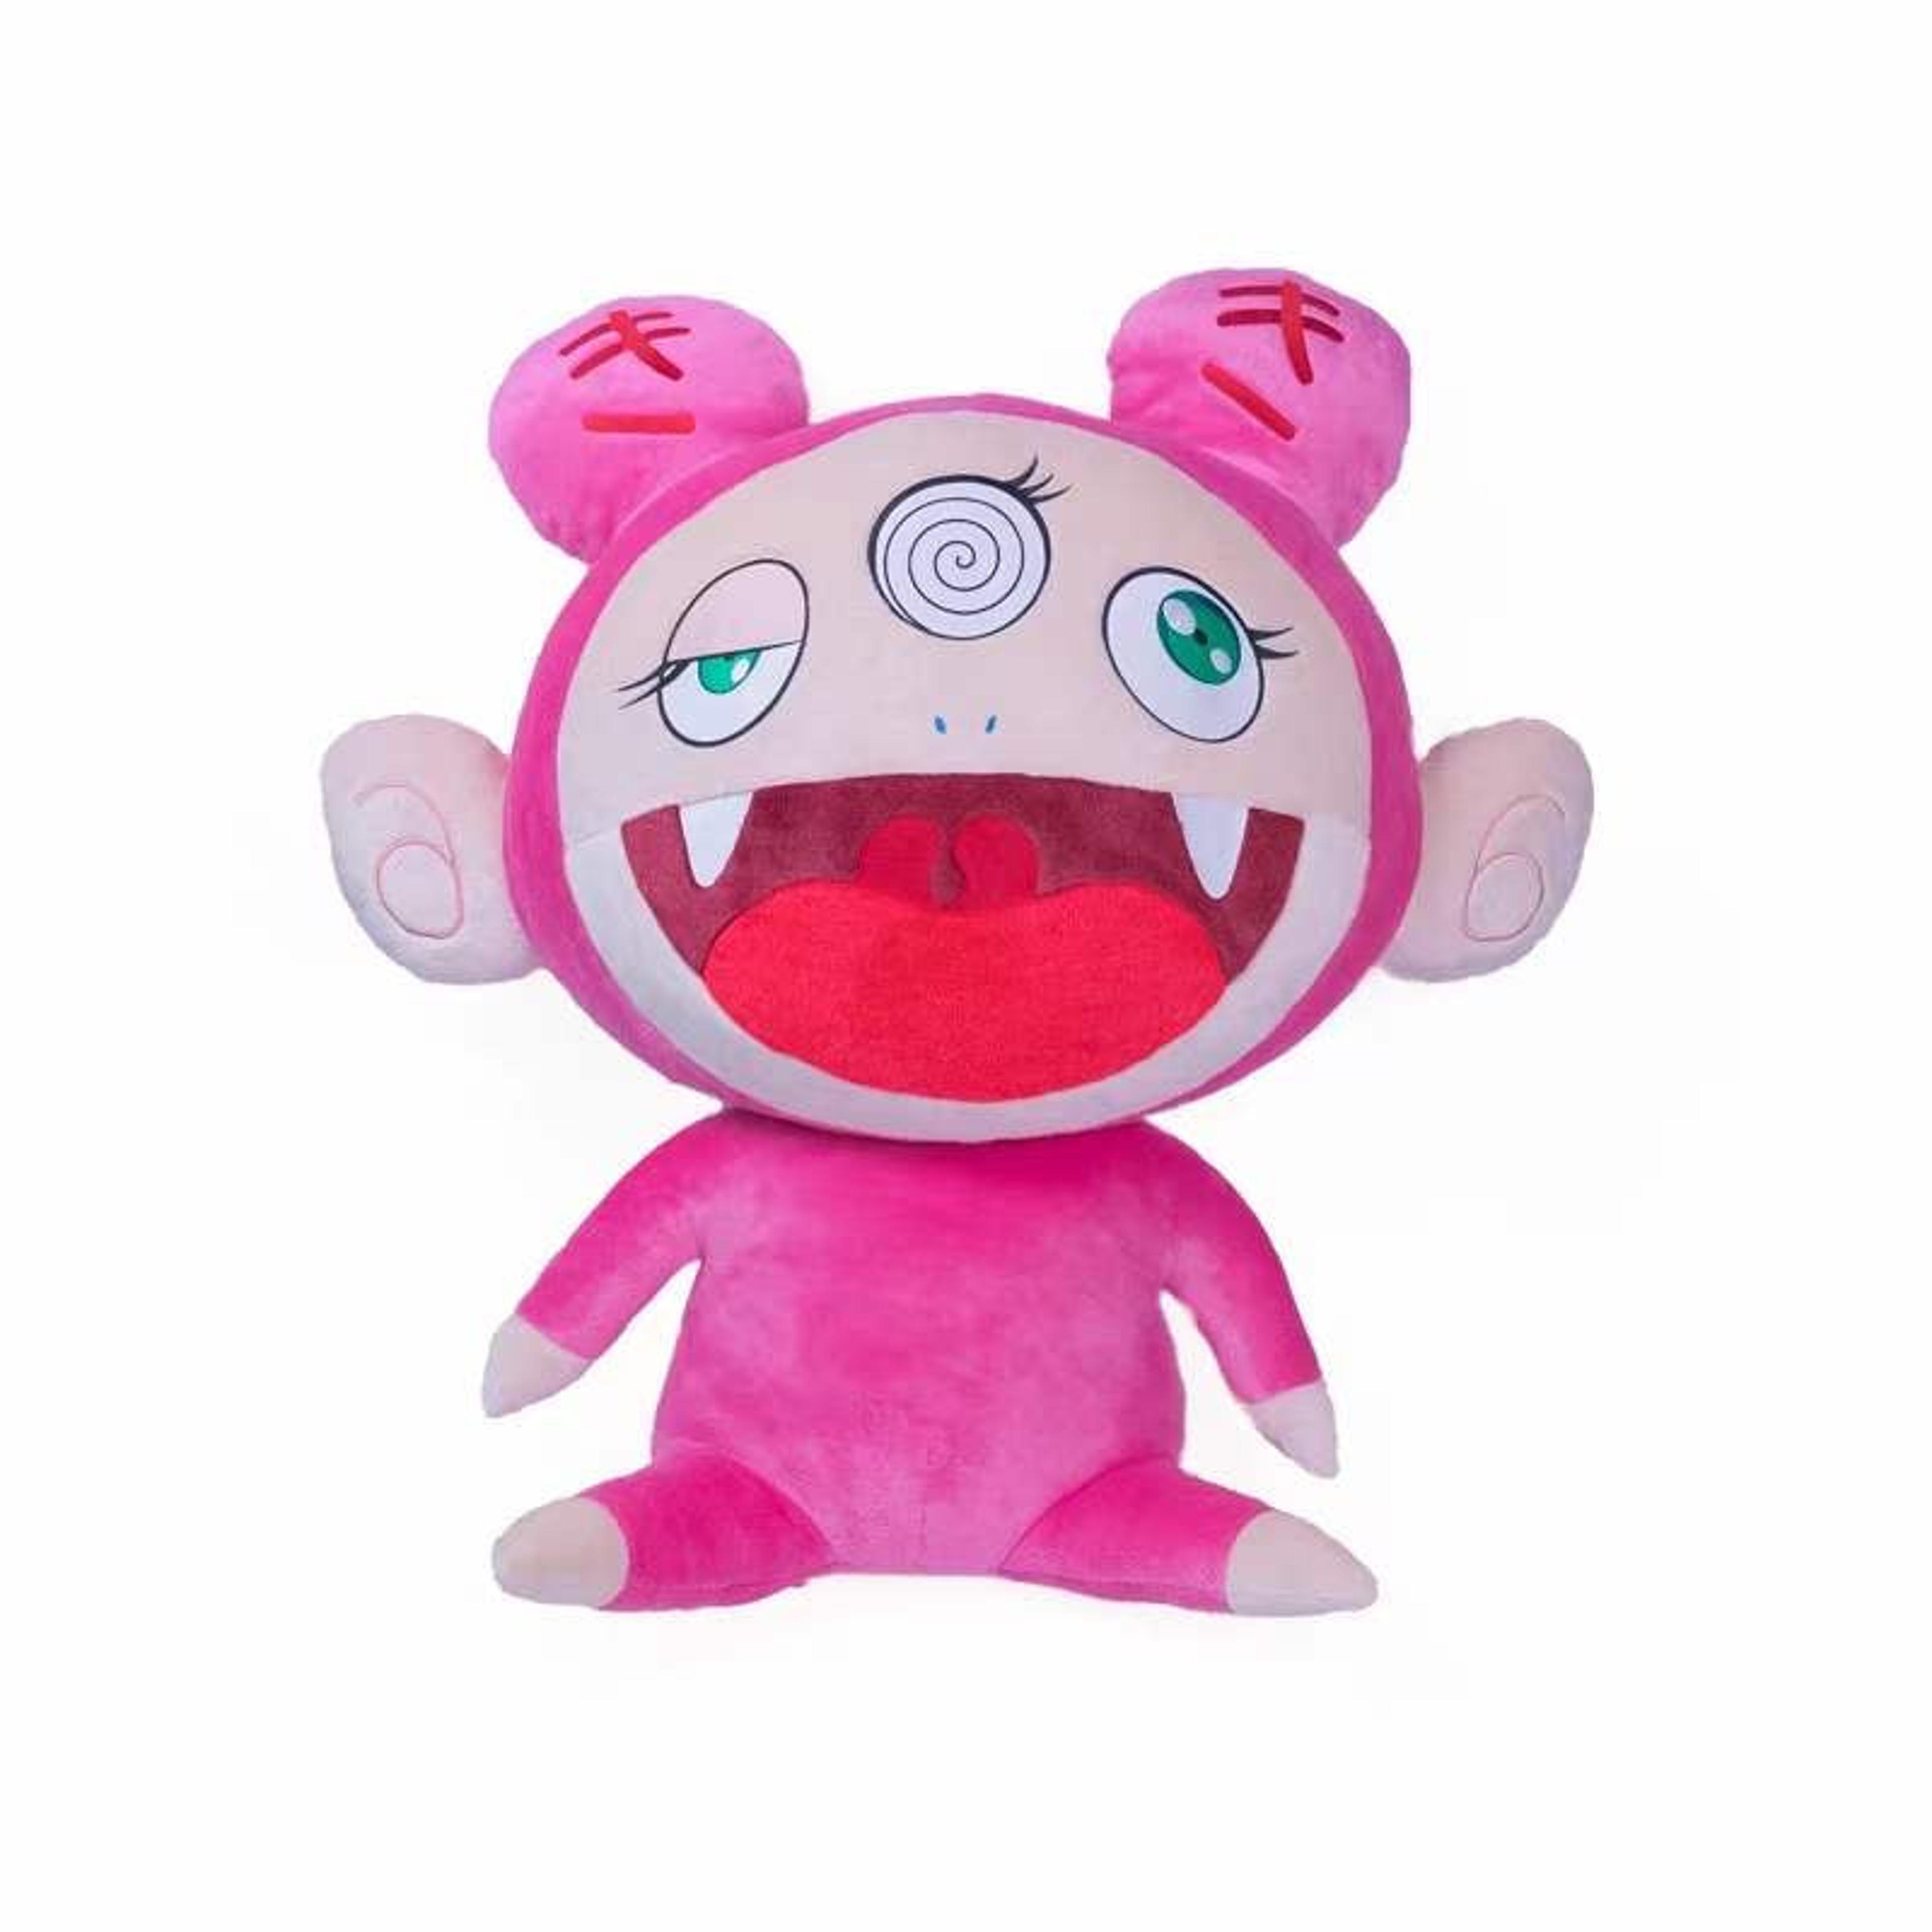 Alternate View 3 of Takashi Murakami Kiki pink plush toy doll